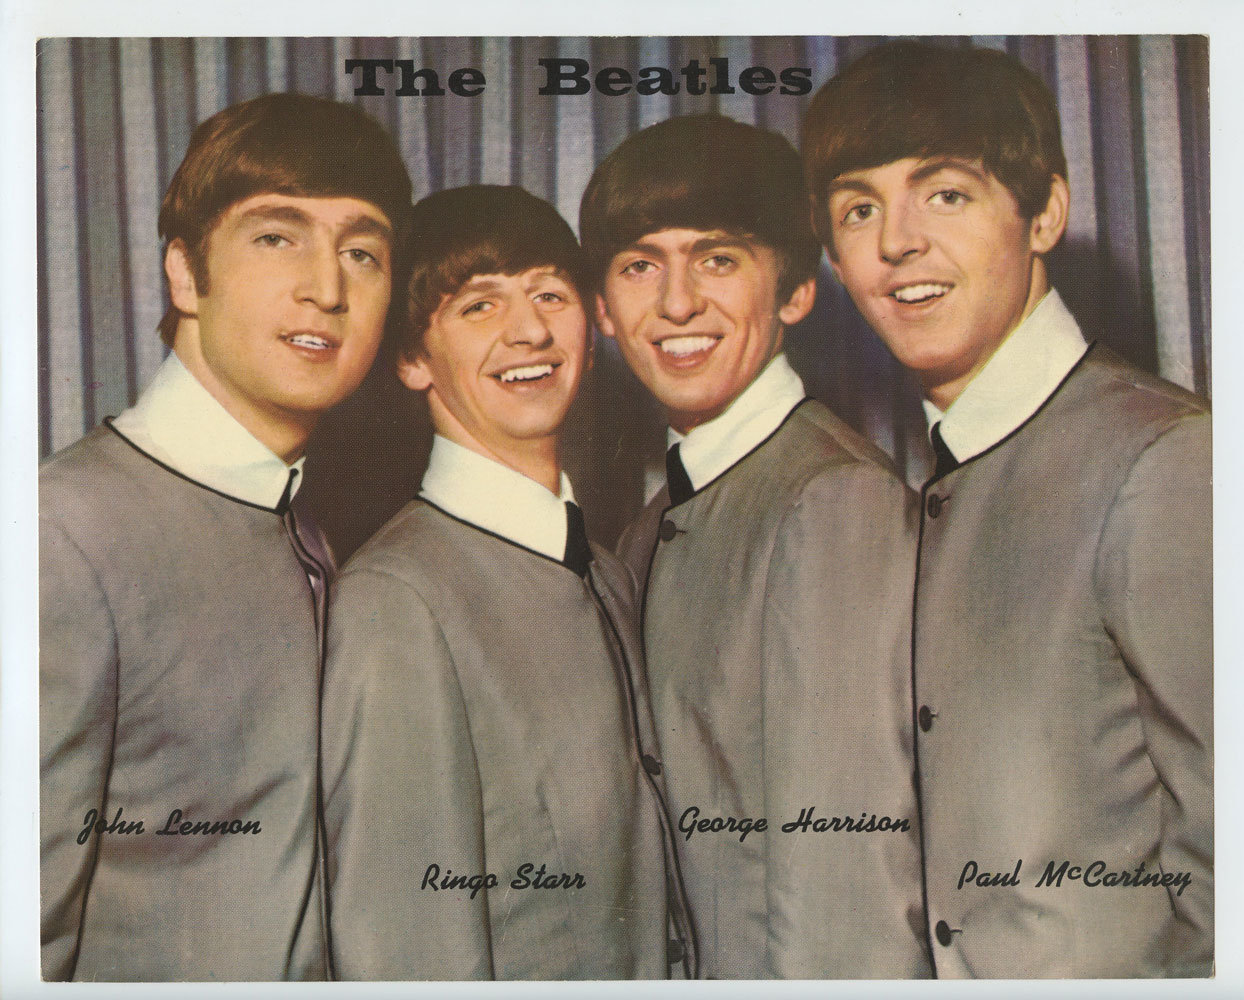 The Beatles Photo Print Original Vintage 1964 Publicity Group Promo